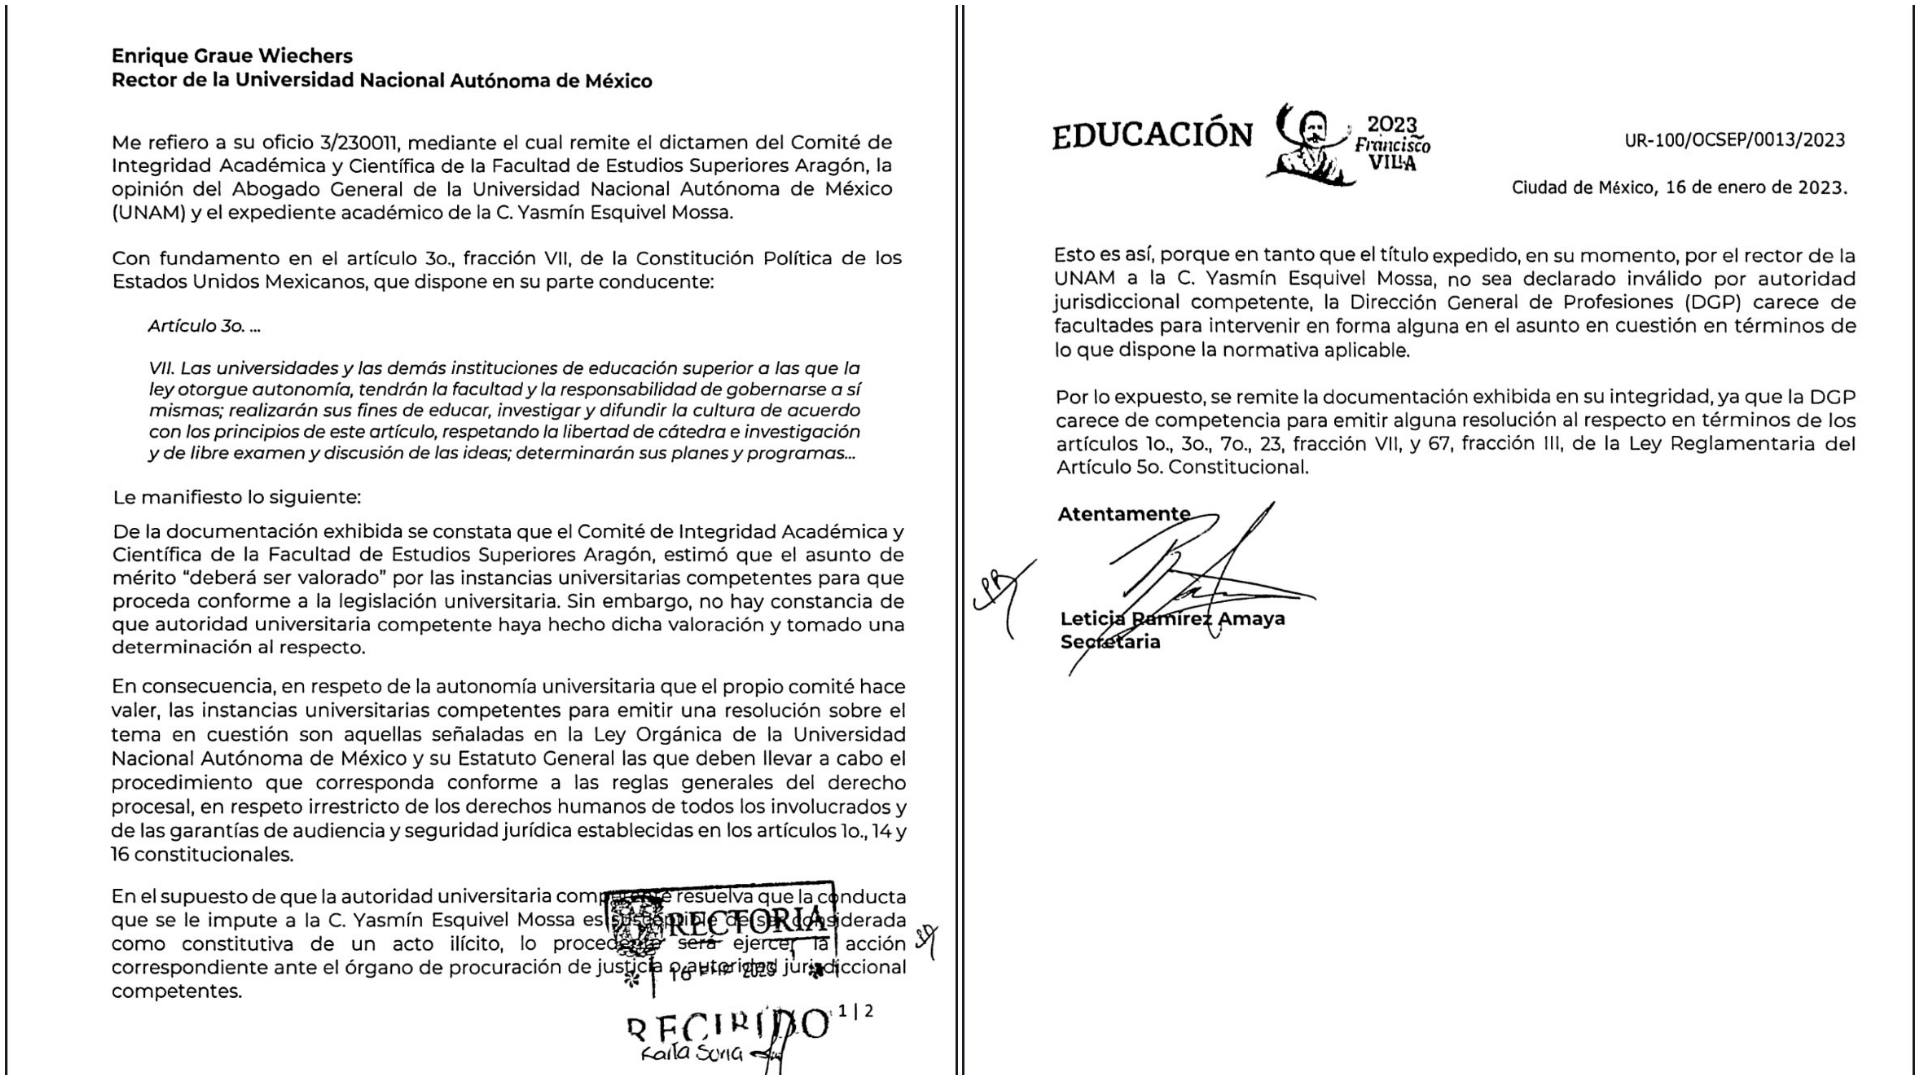 La SEP notificó sobre el supuesto plagio de la tesis de la ministra Yasmín Esquivel (Twitter/@SEP_mx)